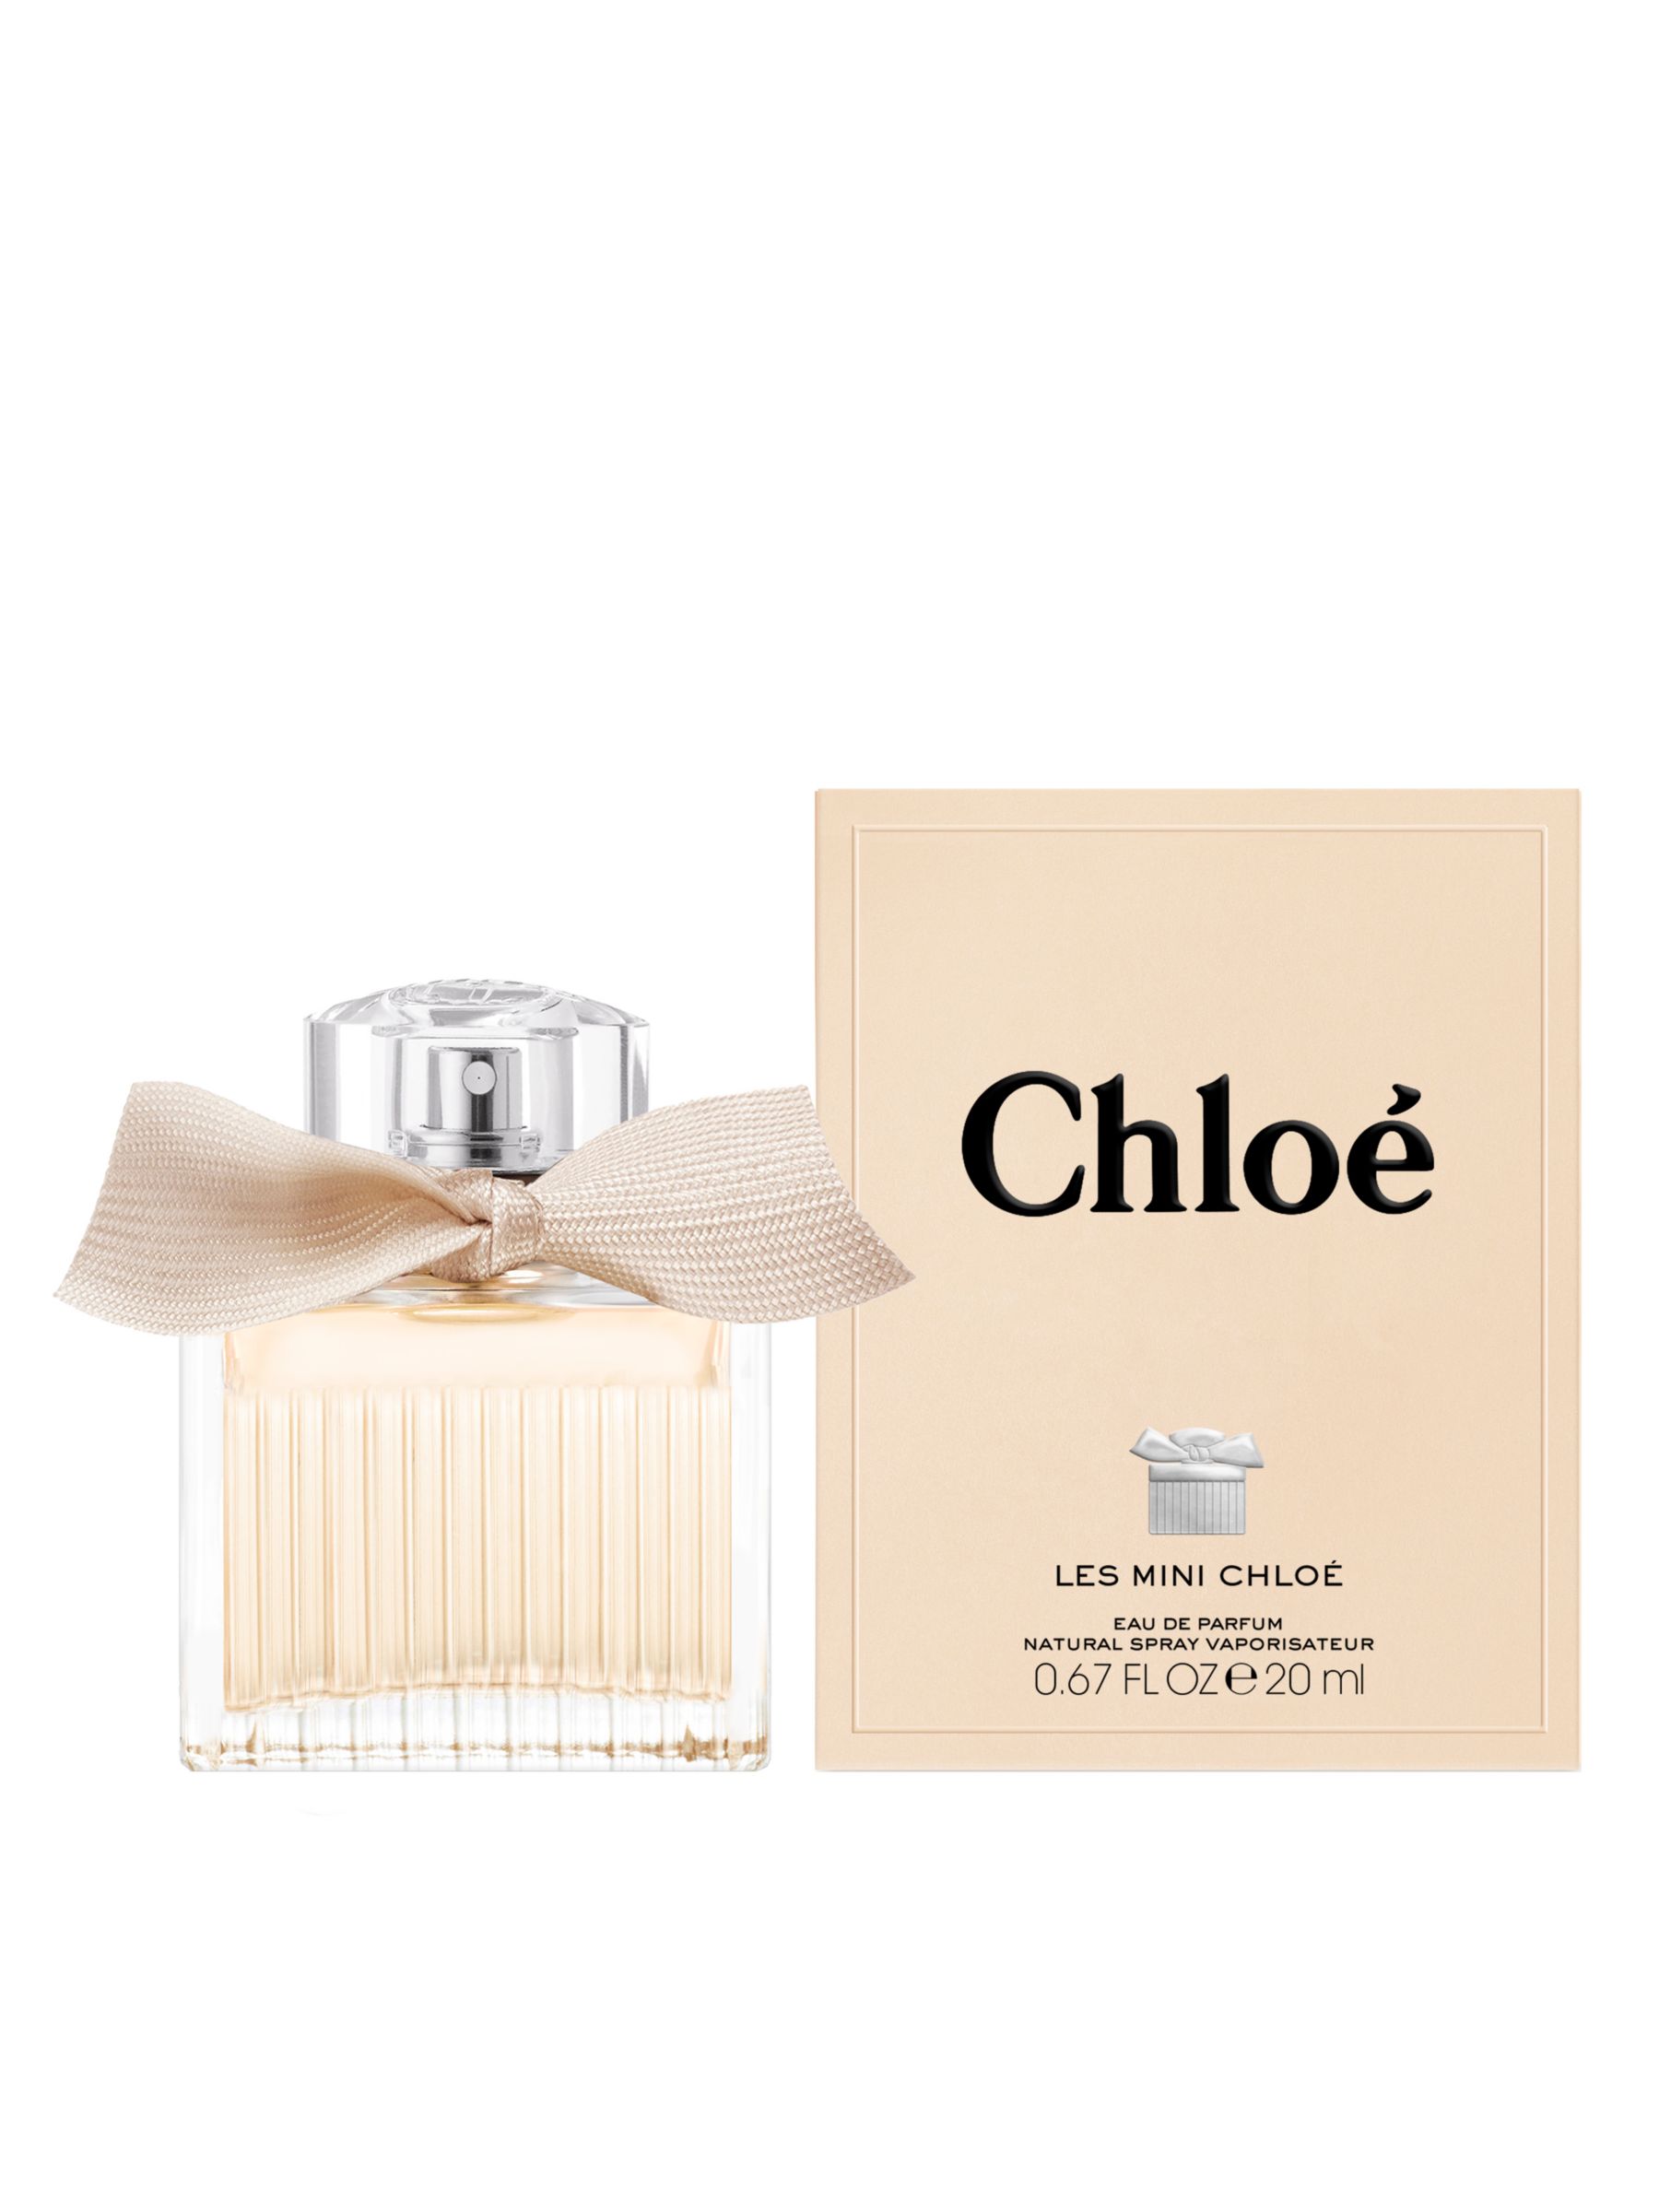 Chloé Les Chloé Eau de Parfum, 20ml